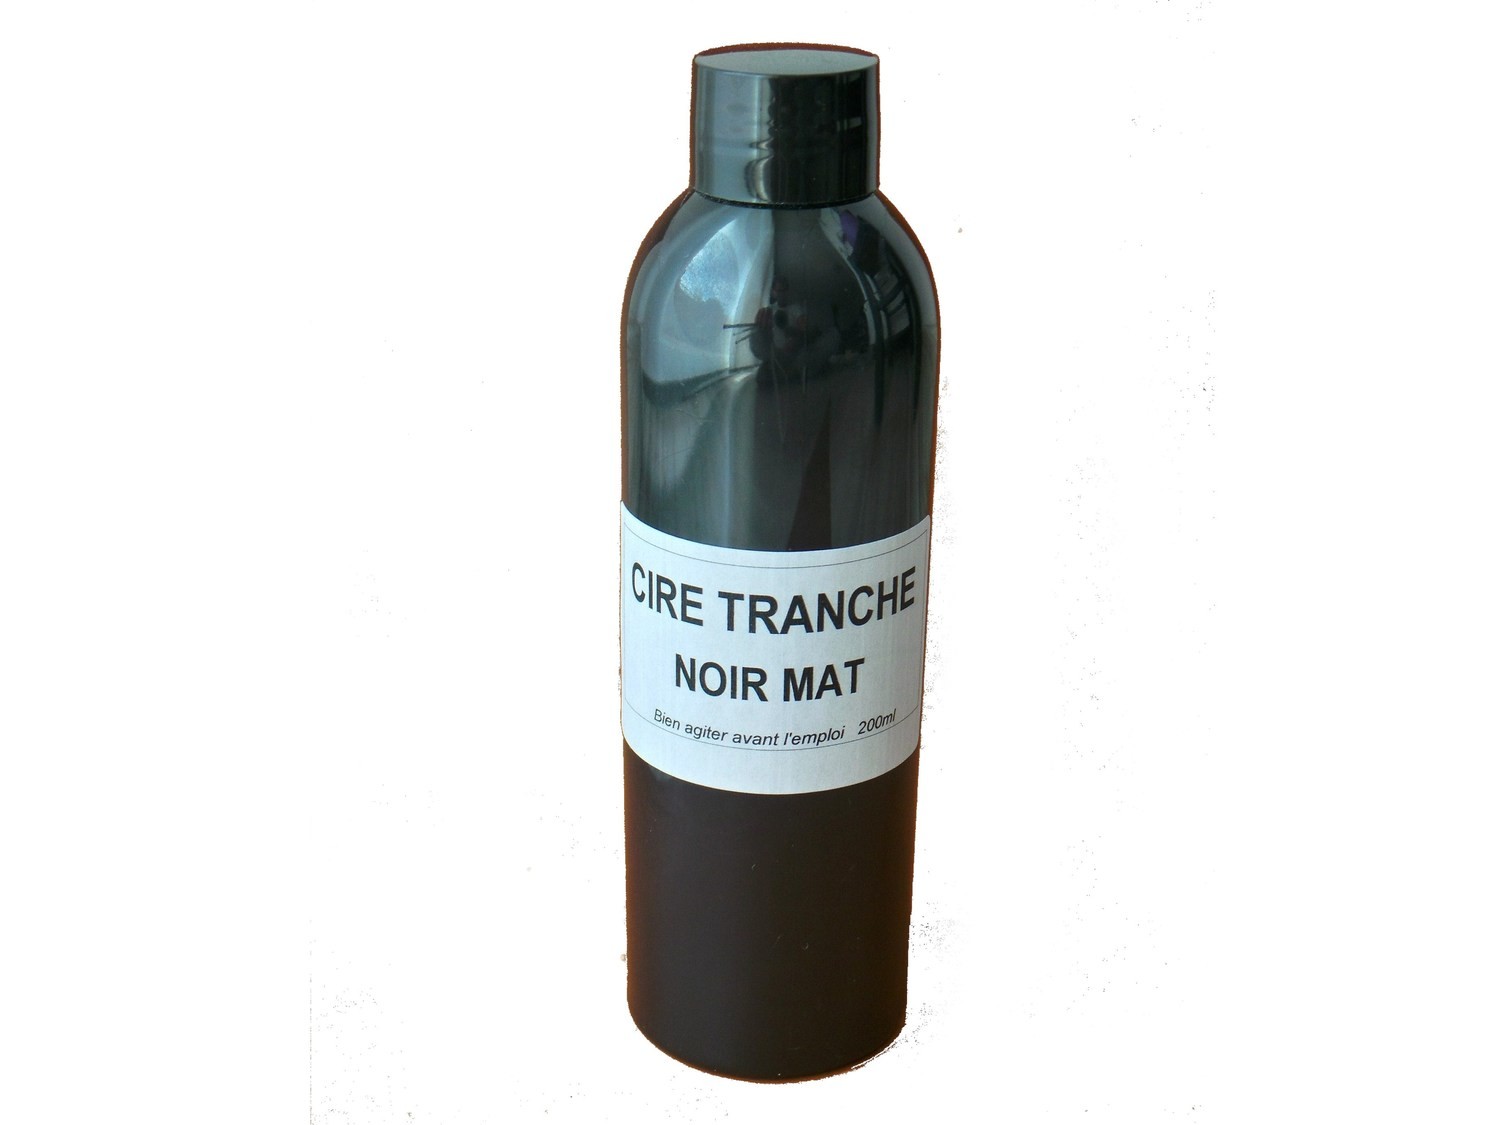 FLACON CIRE TRANCHE NOIR MAT 200 ml